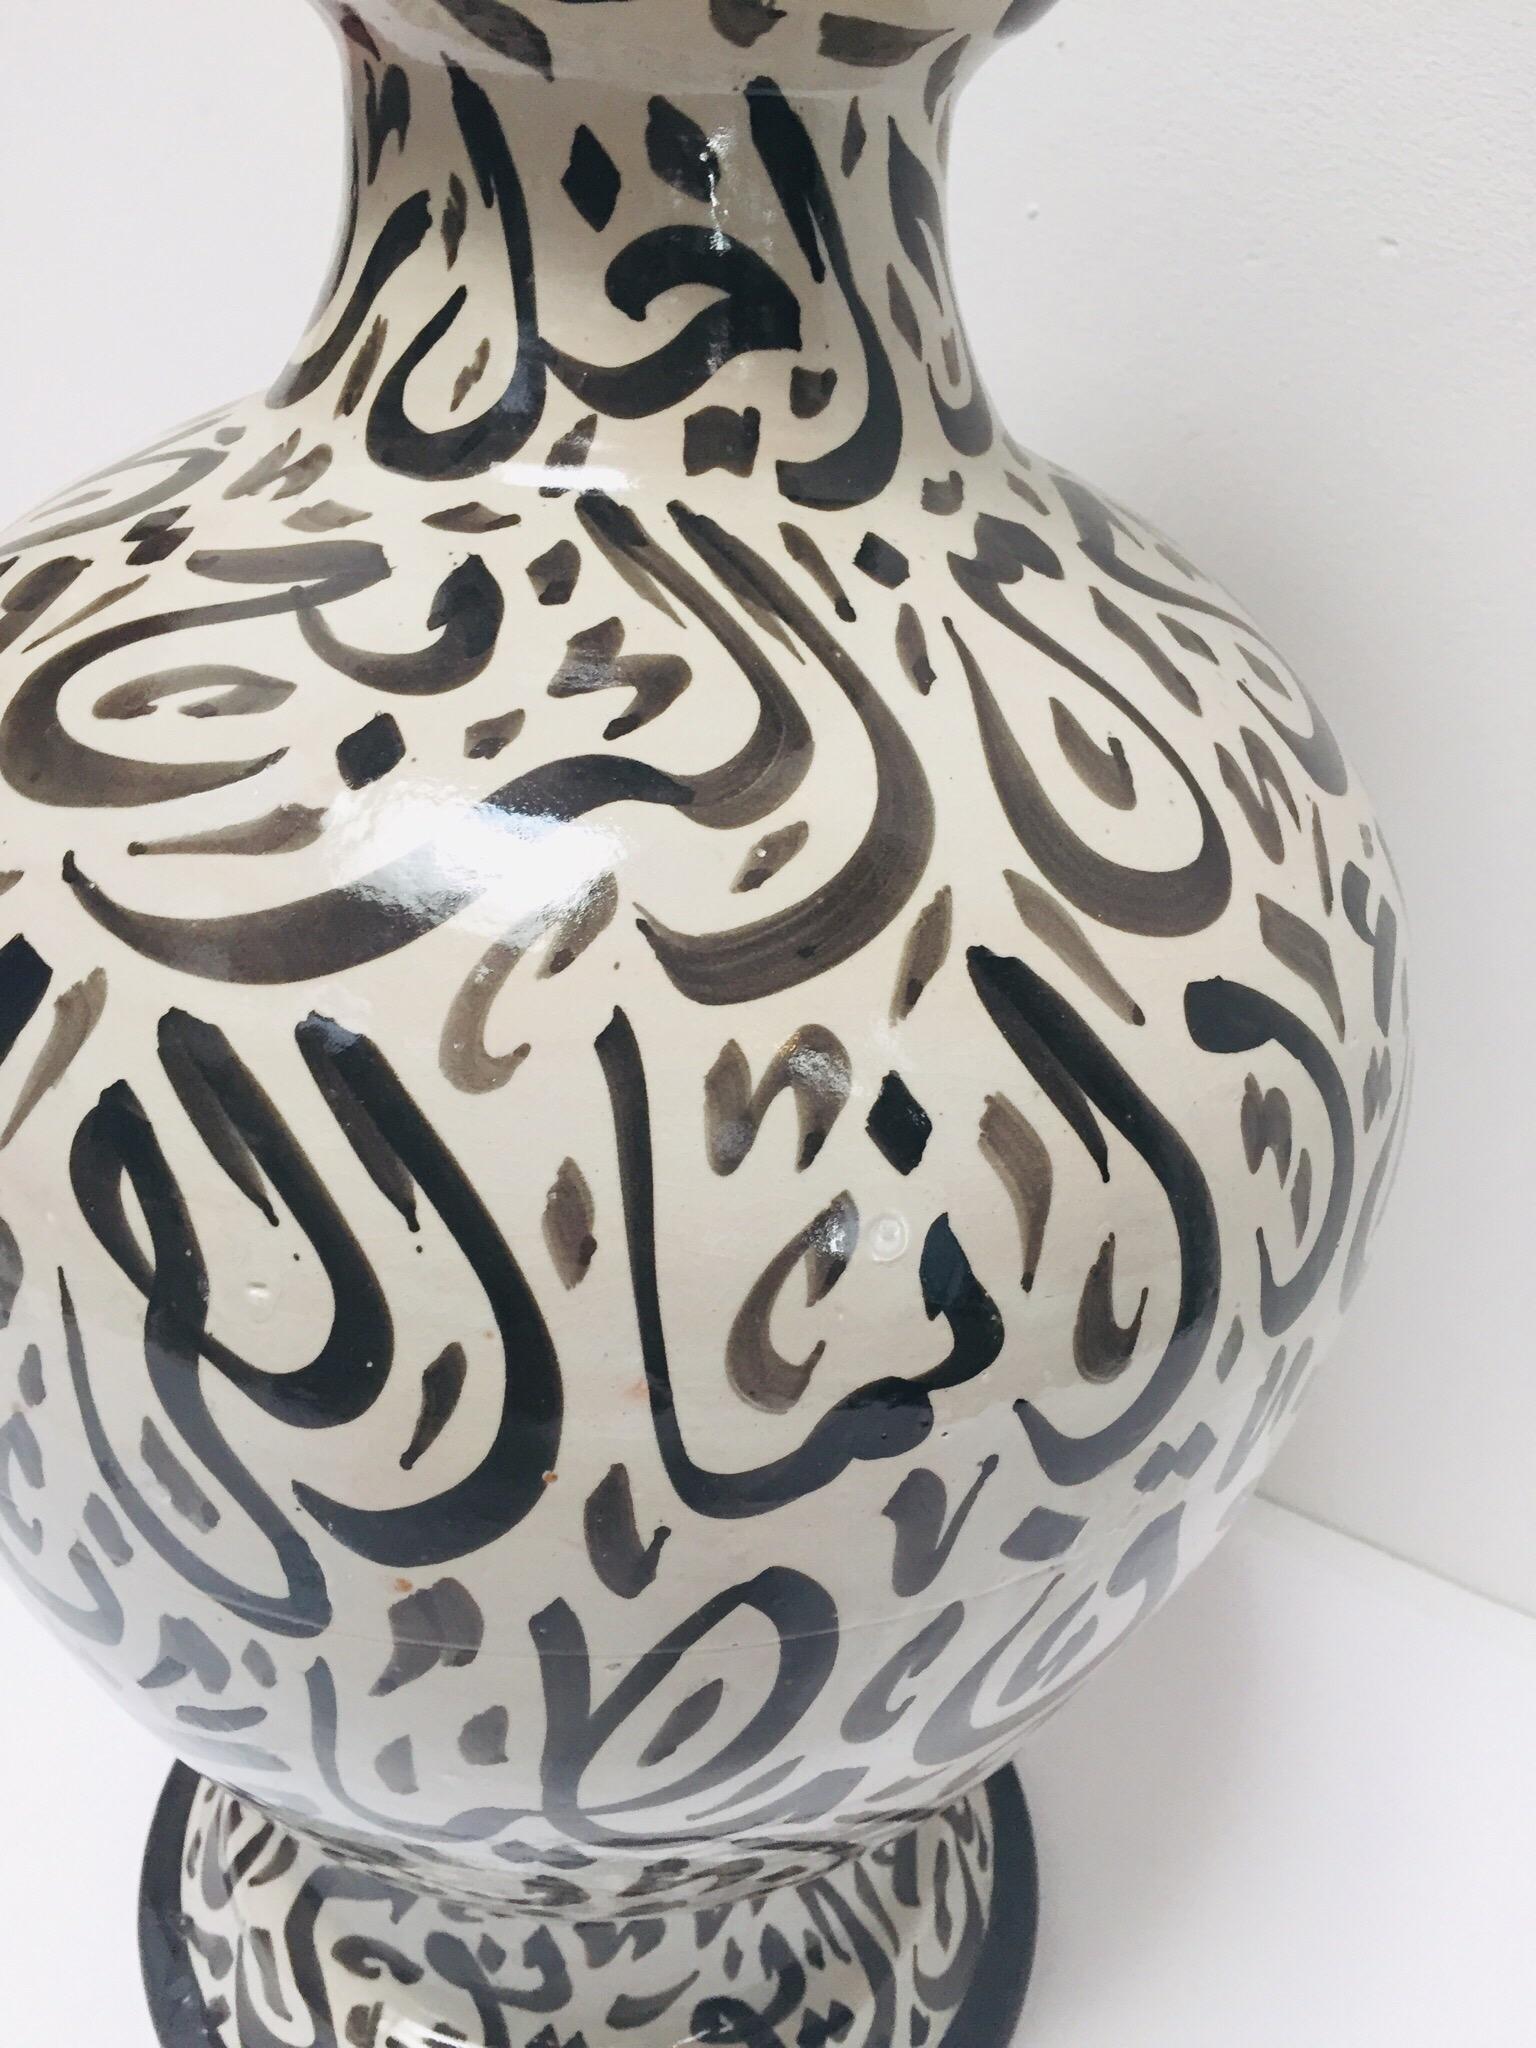 20th Century Large Moorish Glazed Ceramic Vase with Arabic Calligraphy Black Writing Fez For Sale